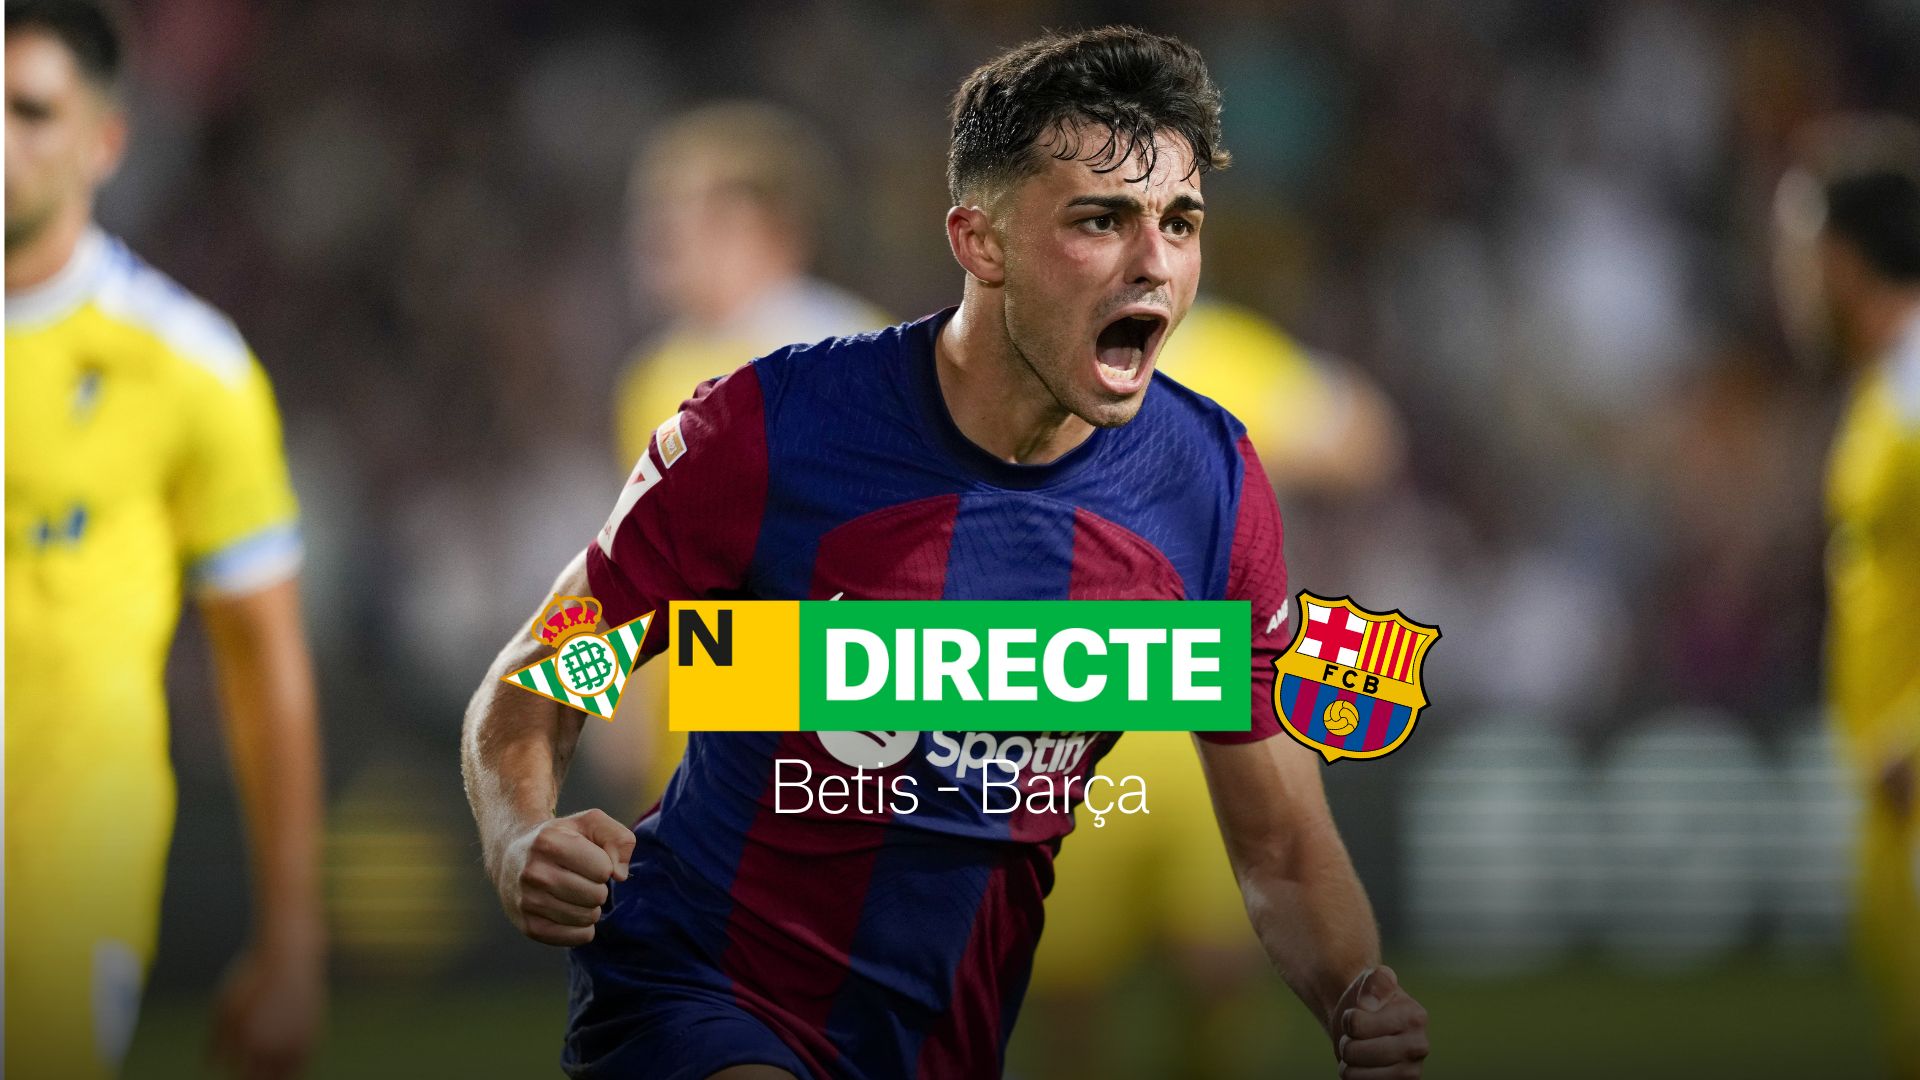 Betis - Barça de LaLiga EA Sports, DIRECTE | Resultat, resum i gols